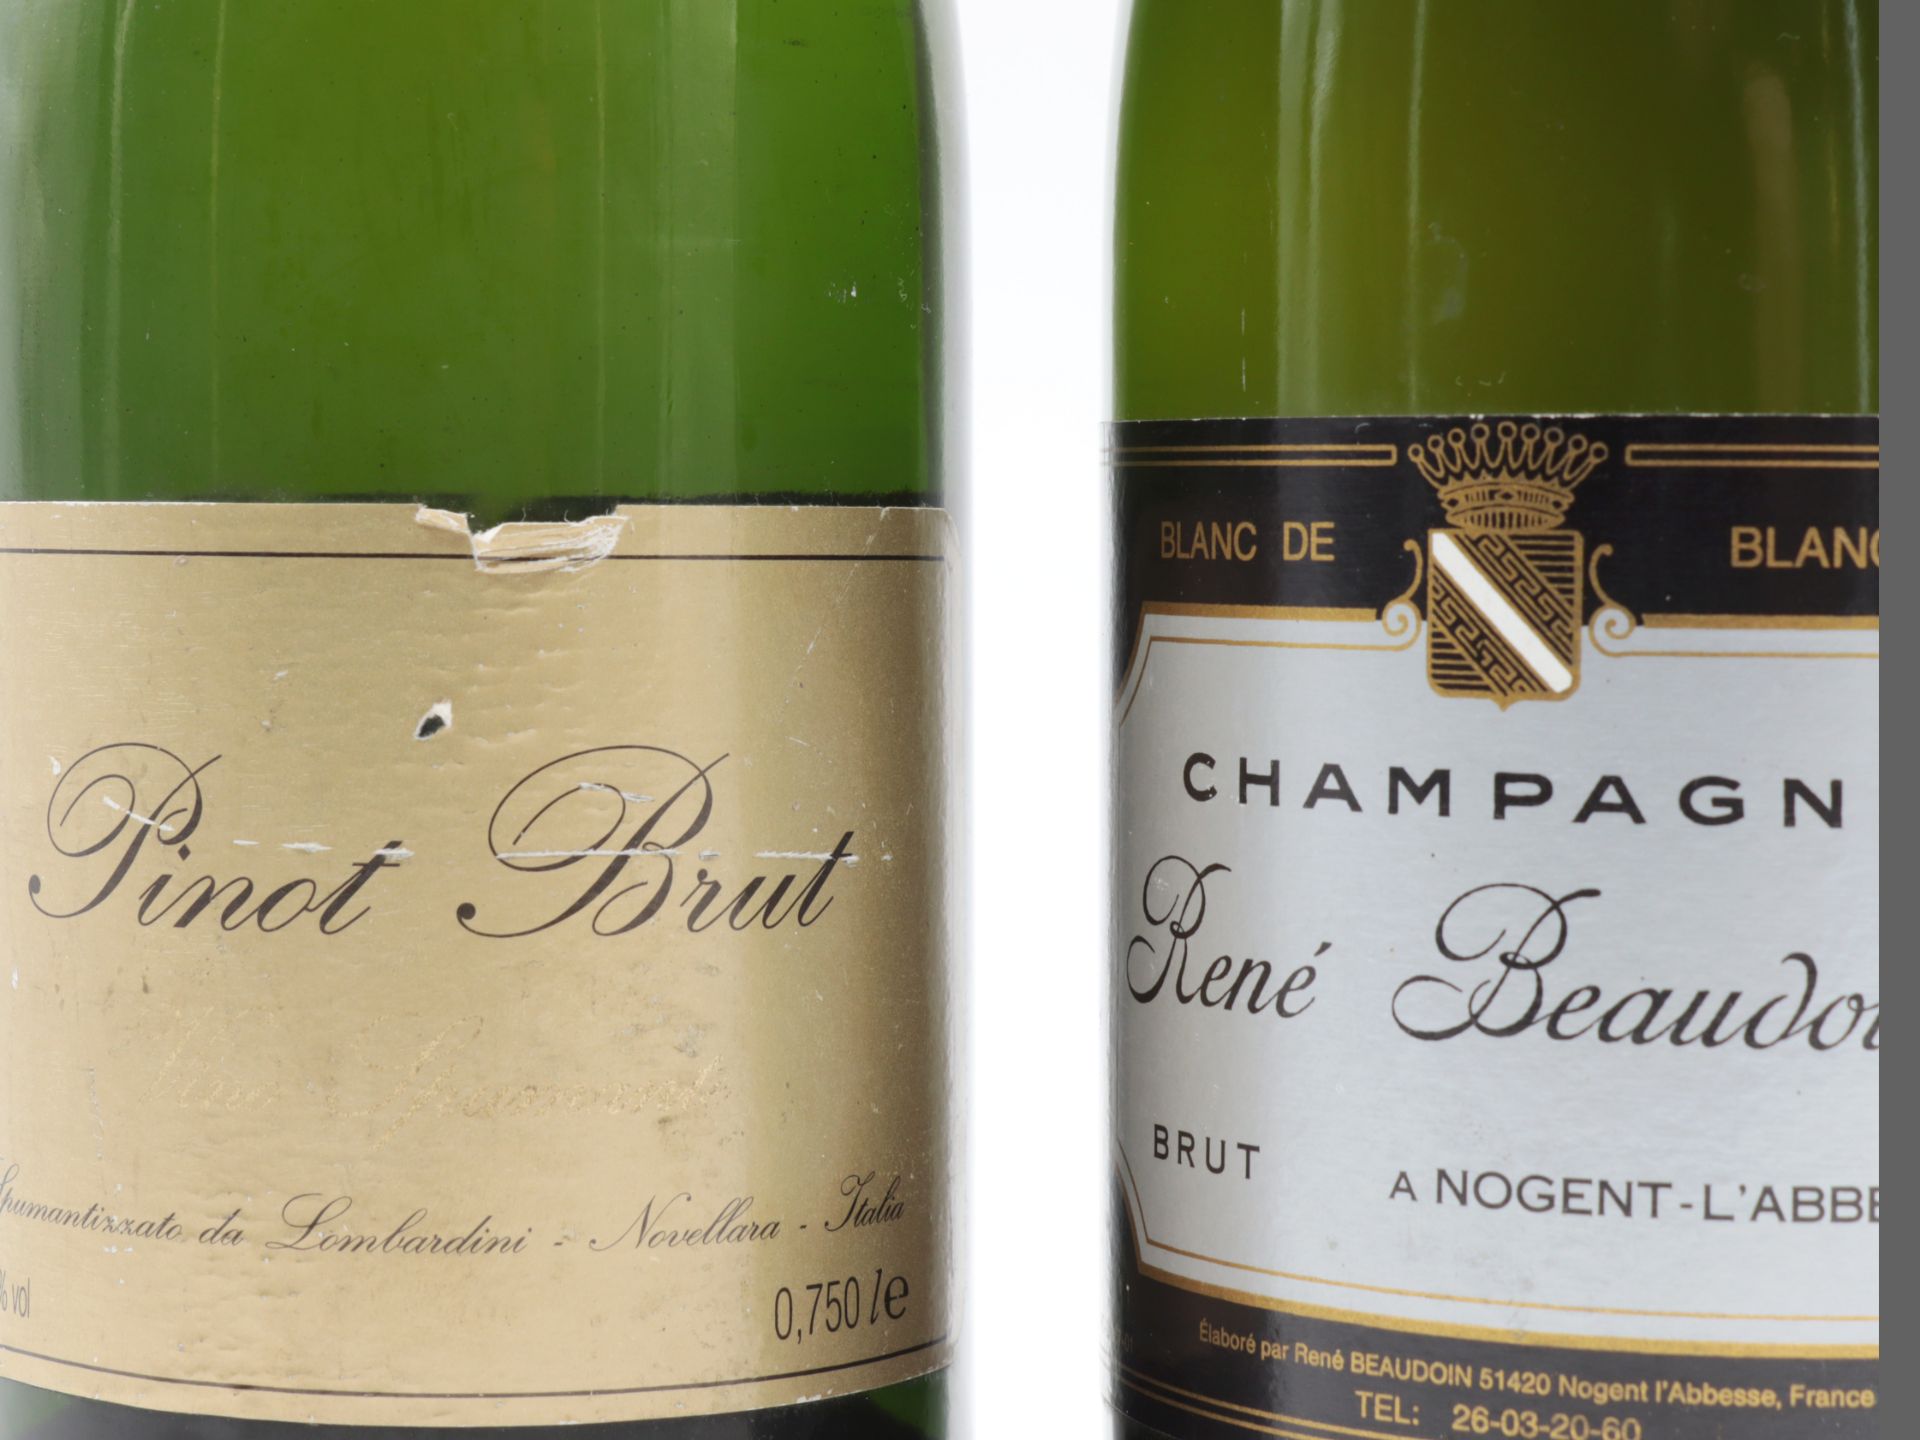 Champagner 1 Fl., René Beaudouin a Nogent-L´Abbesse, Brut, Blanc de blancs, 12 %, niedriger - Bild 3 aus 4